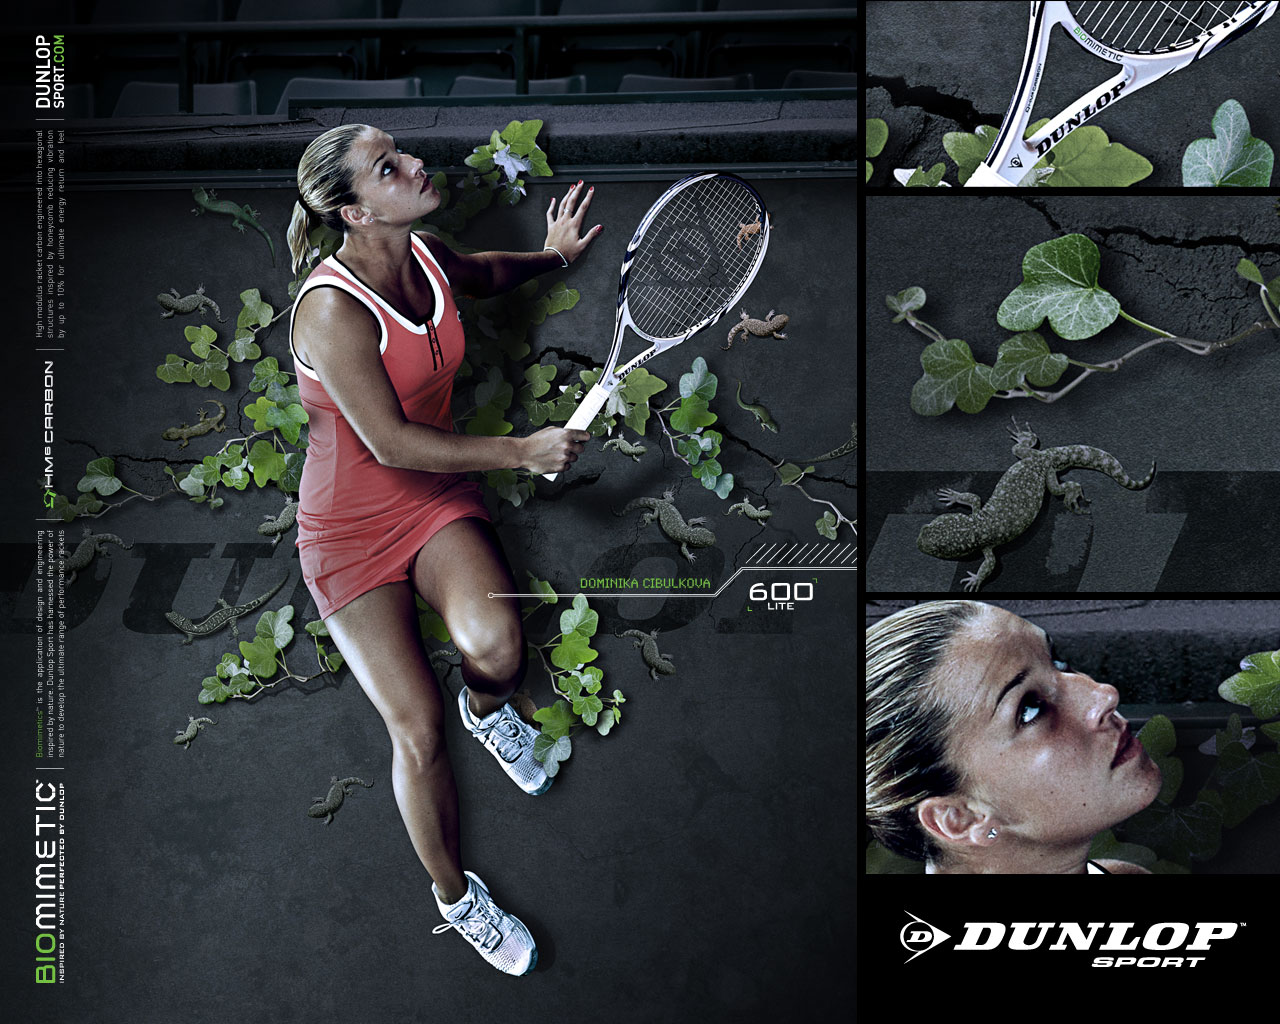 Descarga gratuita de fondo de pantalla para móvil de Deporte, Dominika Cibulkova.